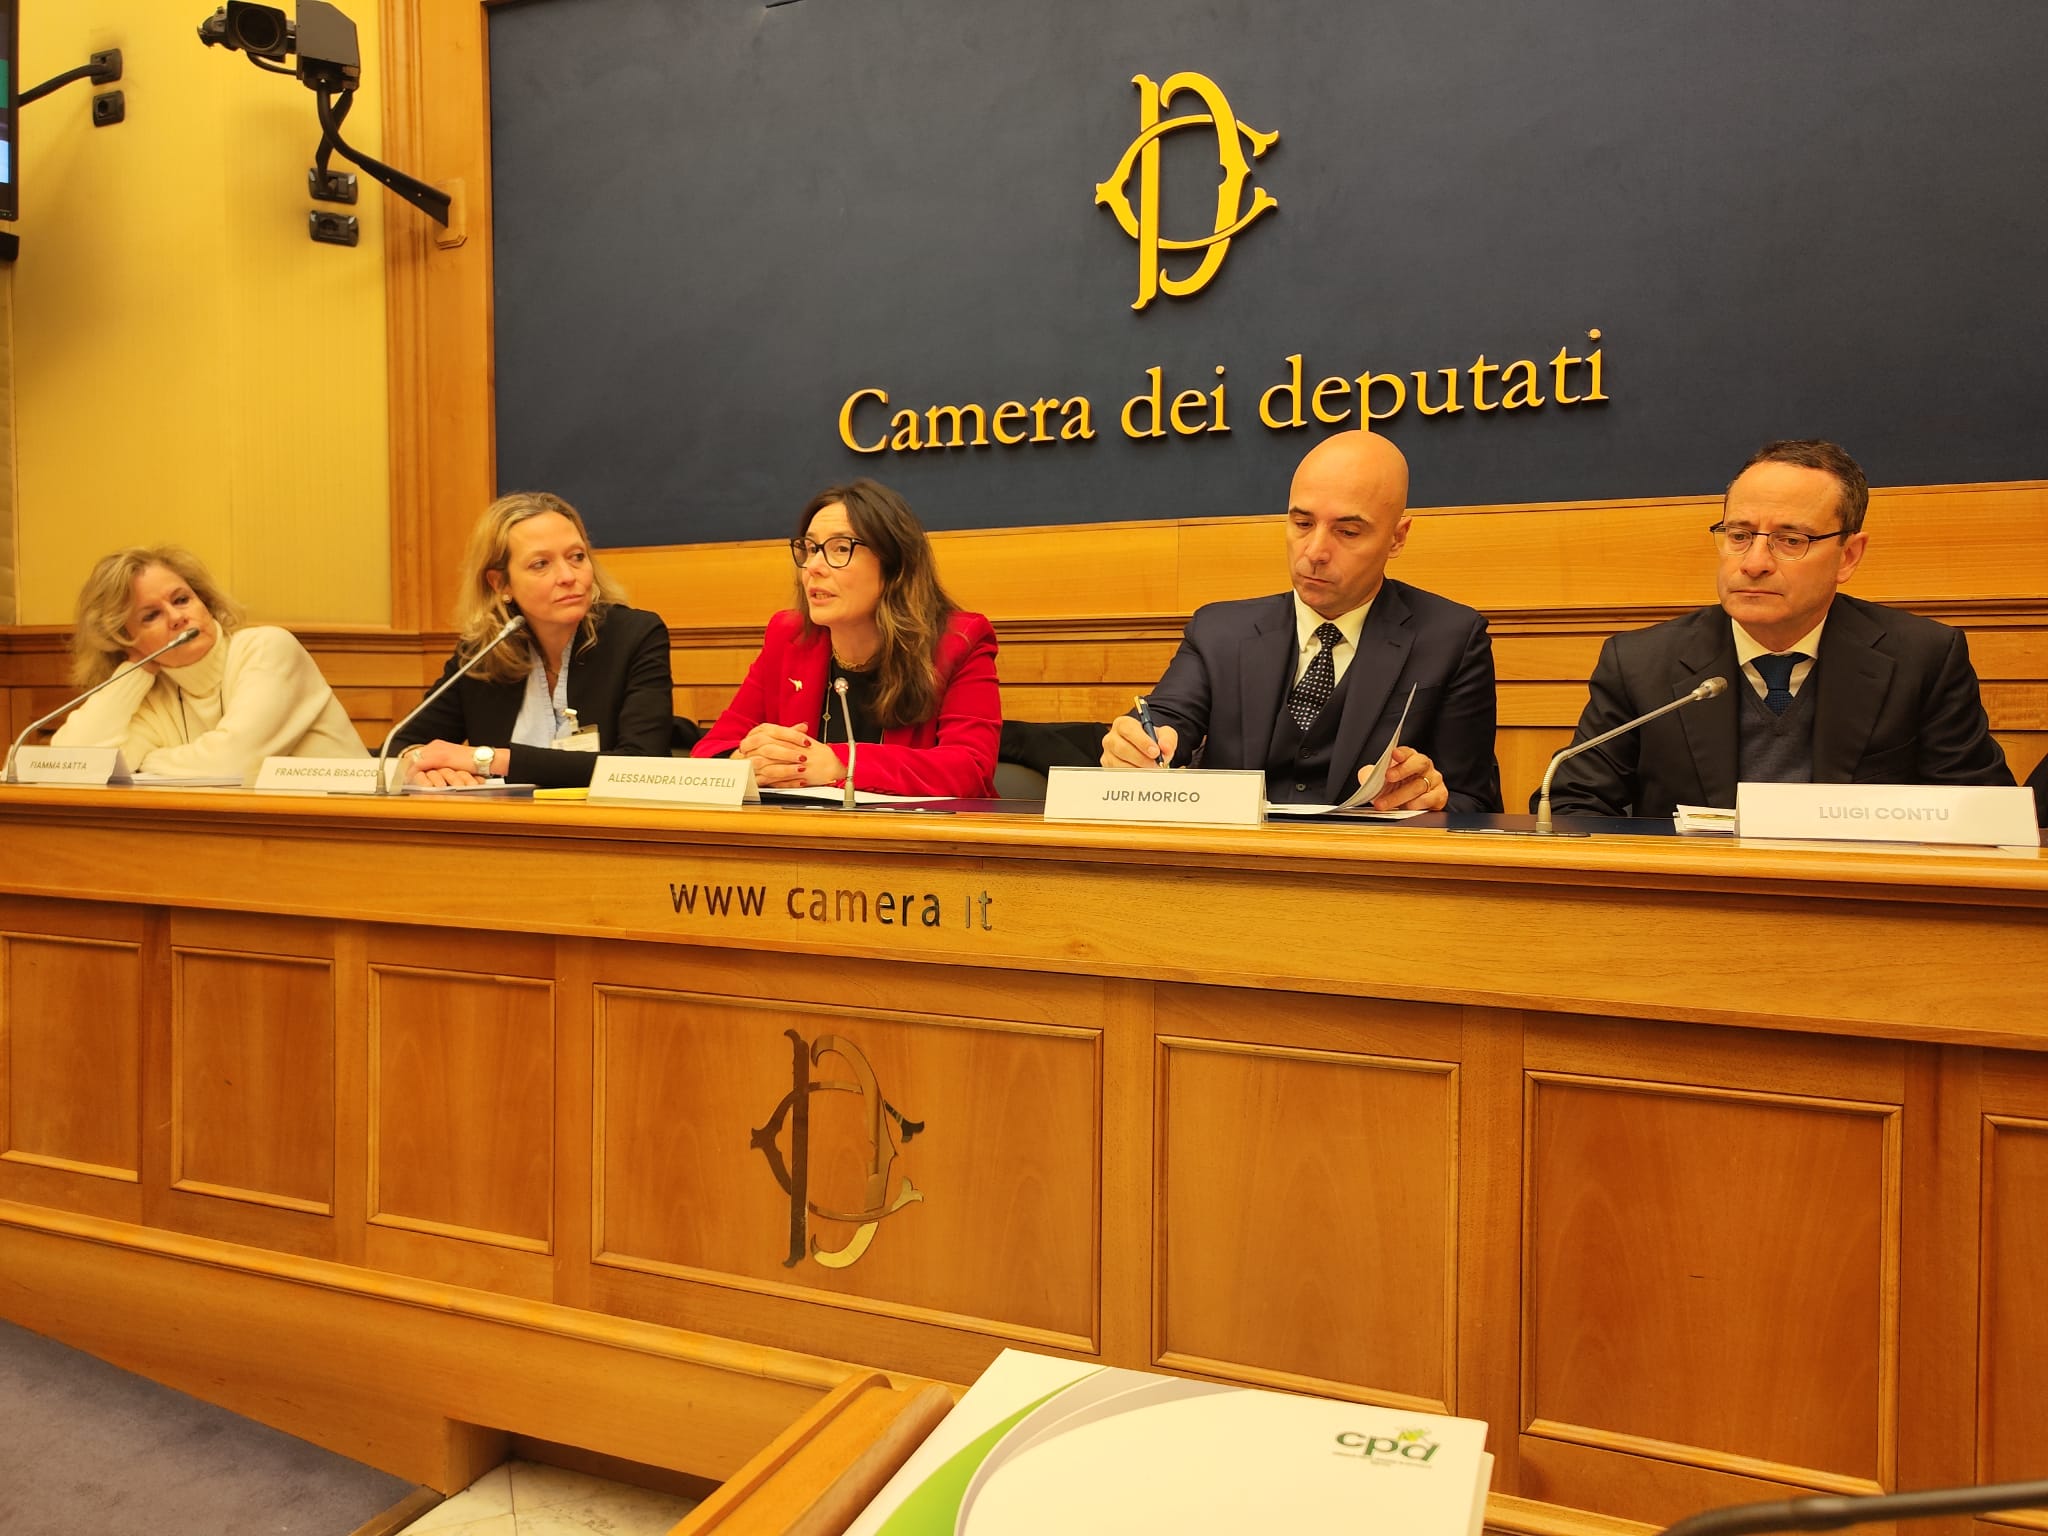 Featured image for “Presentato il Premio Giornalistico “Paolo Osiride Ferrero” alla Camera dei Deputati”